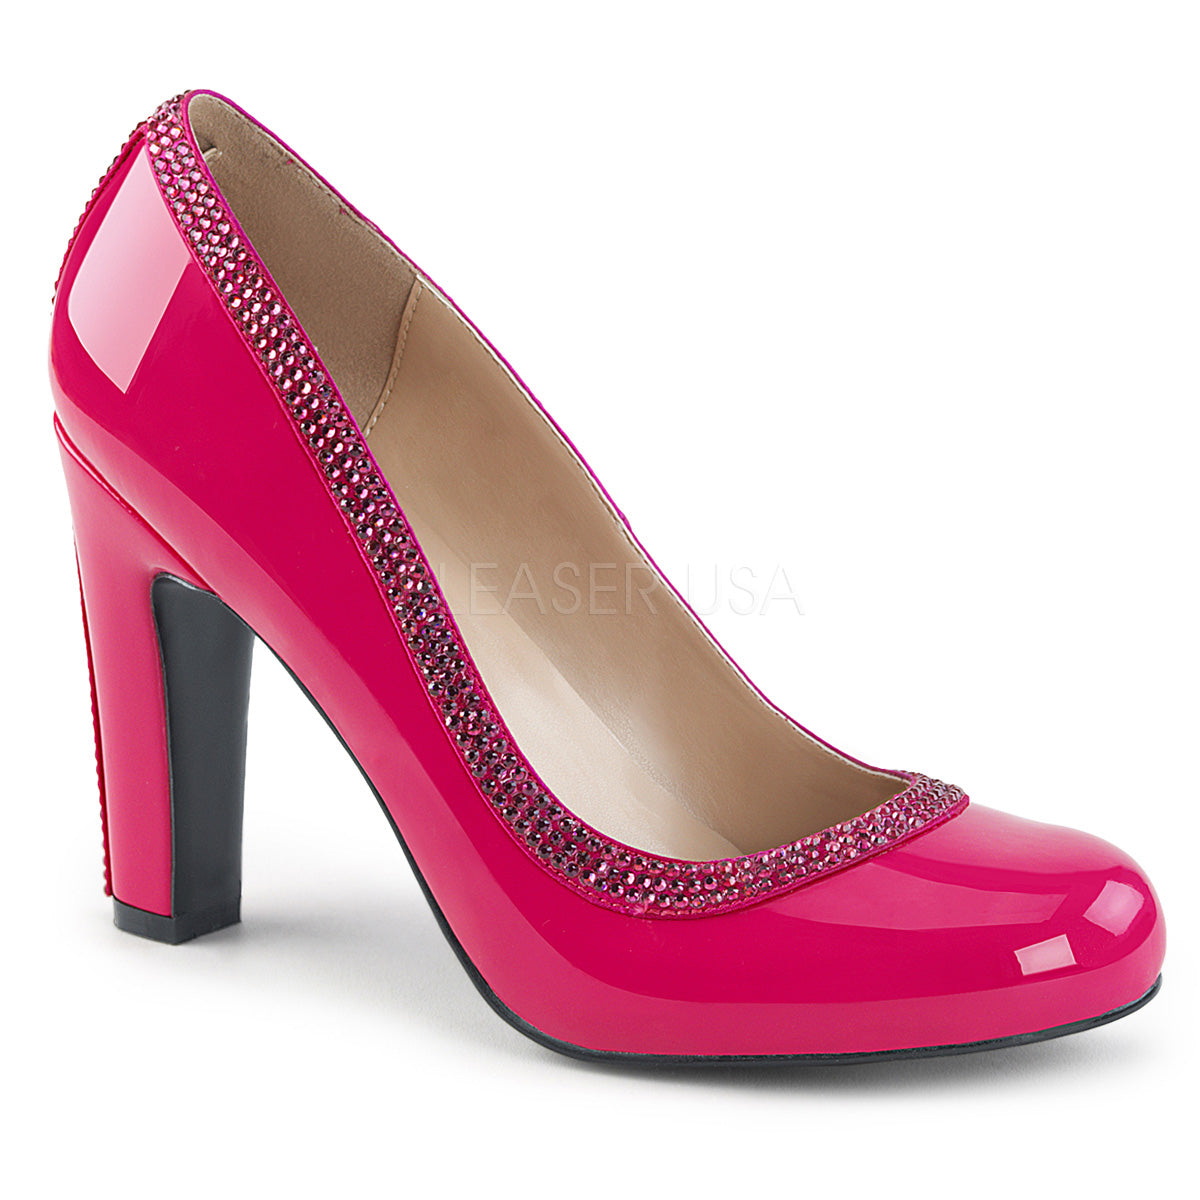 4 inch 10 cm heels, high heels, women high heels, Chikoshoes.com